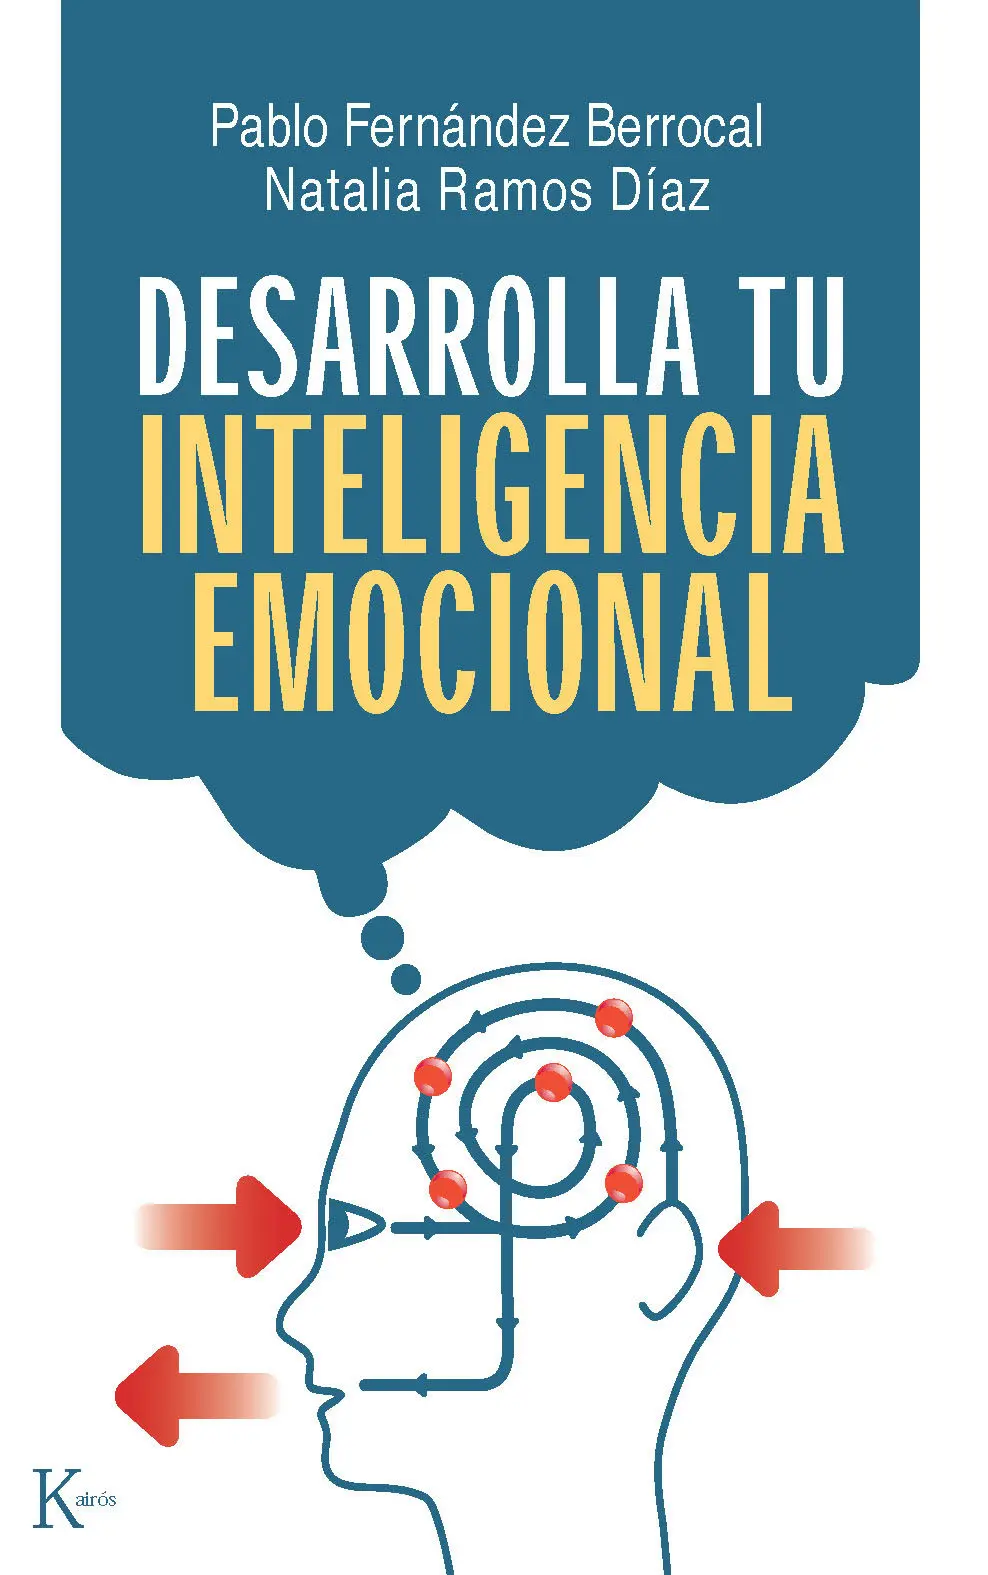 inteligencia emocional y psicologia positiva - Qué propone la psicología positiva